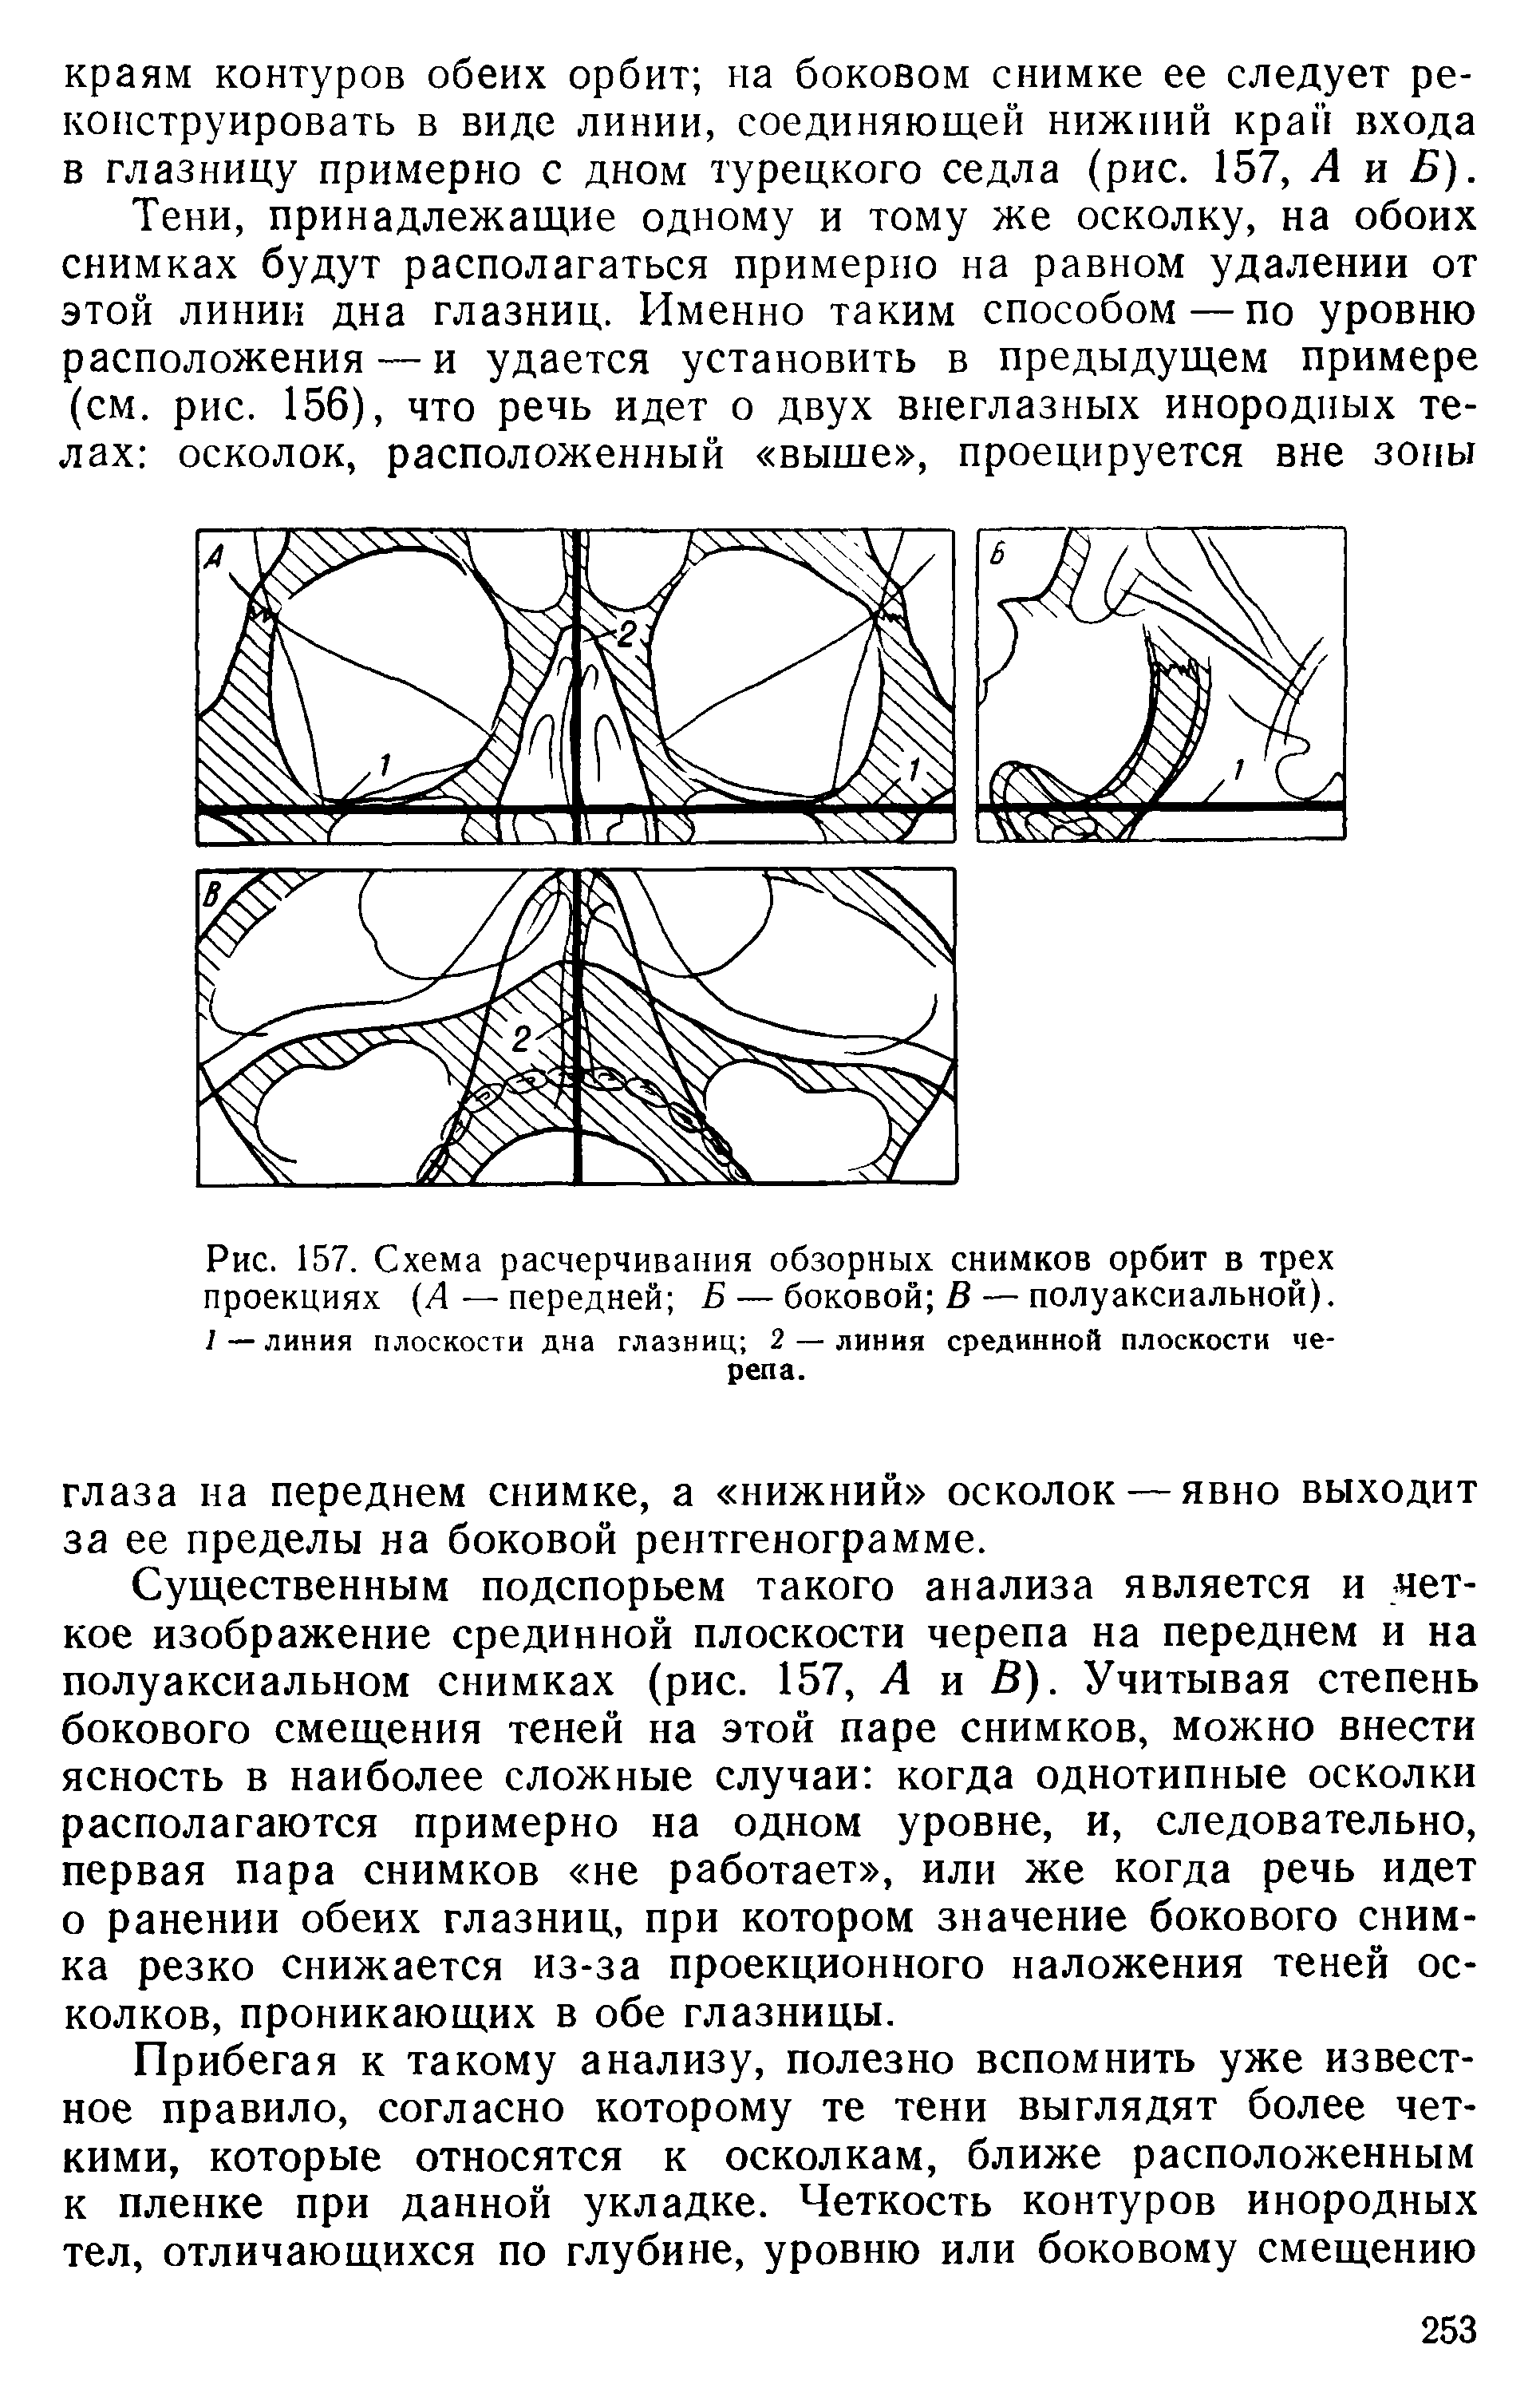 Рис. 157. Схема расчерчивания обзорных снимков орбит в трех проекциях (Д — передней Б — боковой В — полуаксиальной). 1—линия плоскости дна глазниц 2 — линия срединной плоскости черепа.